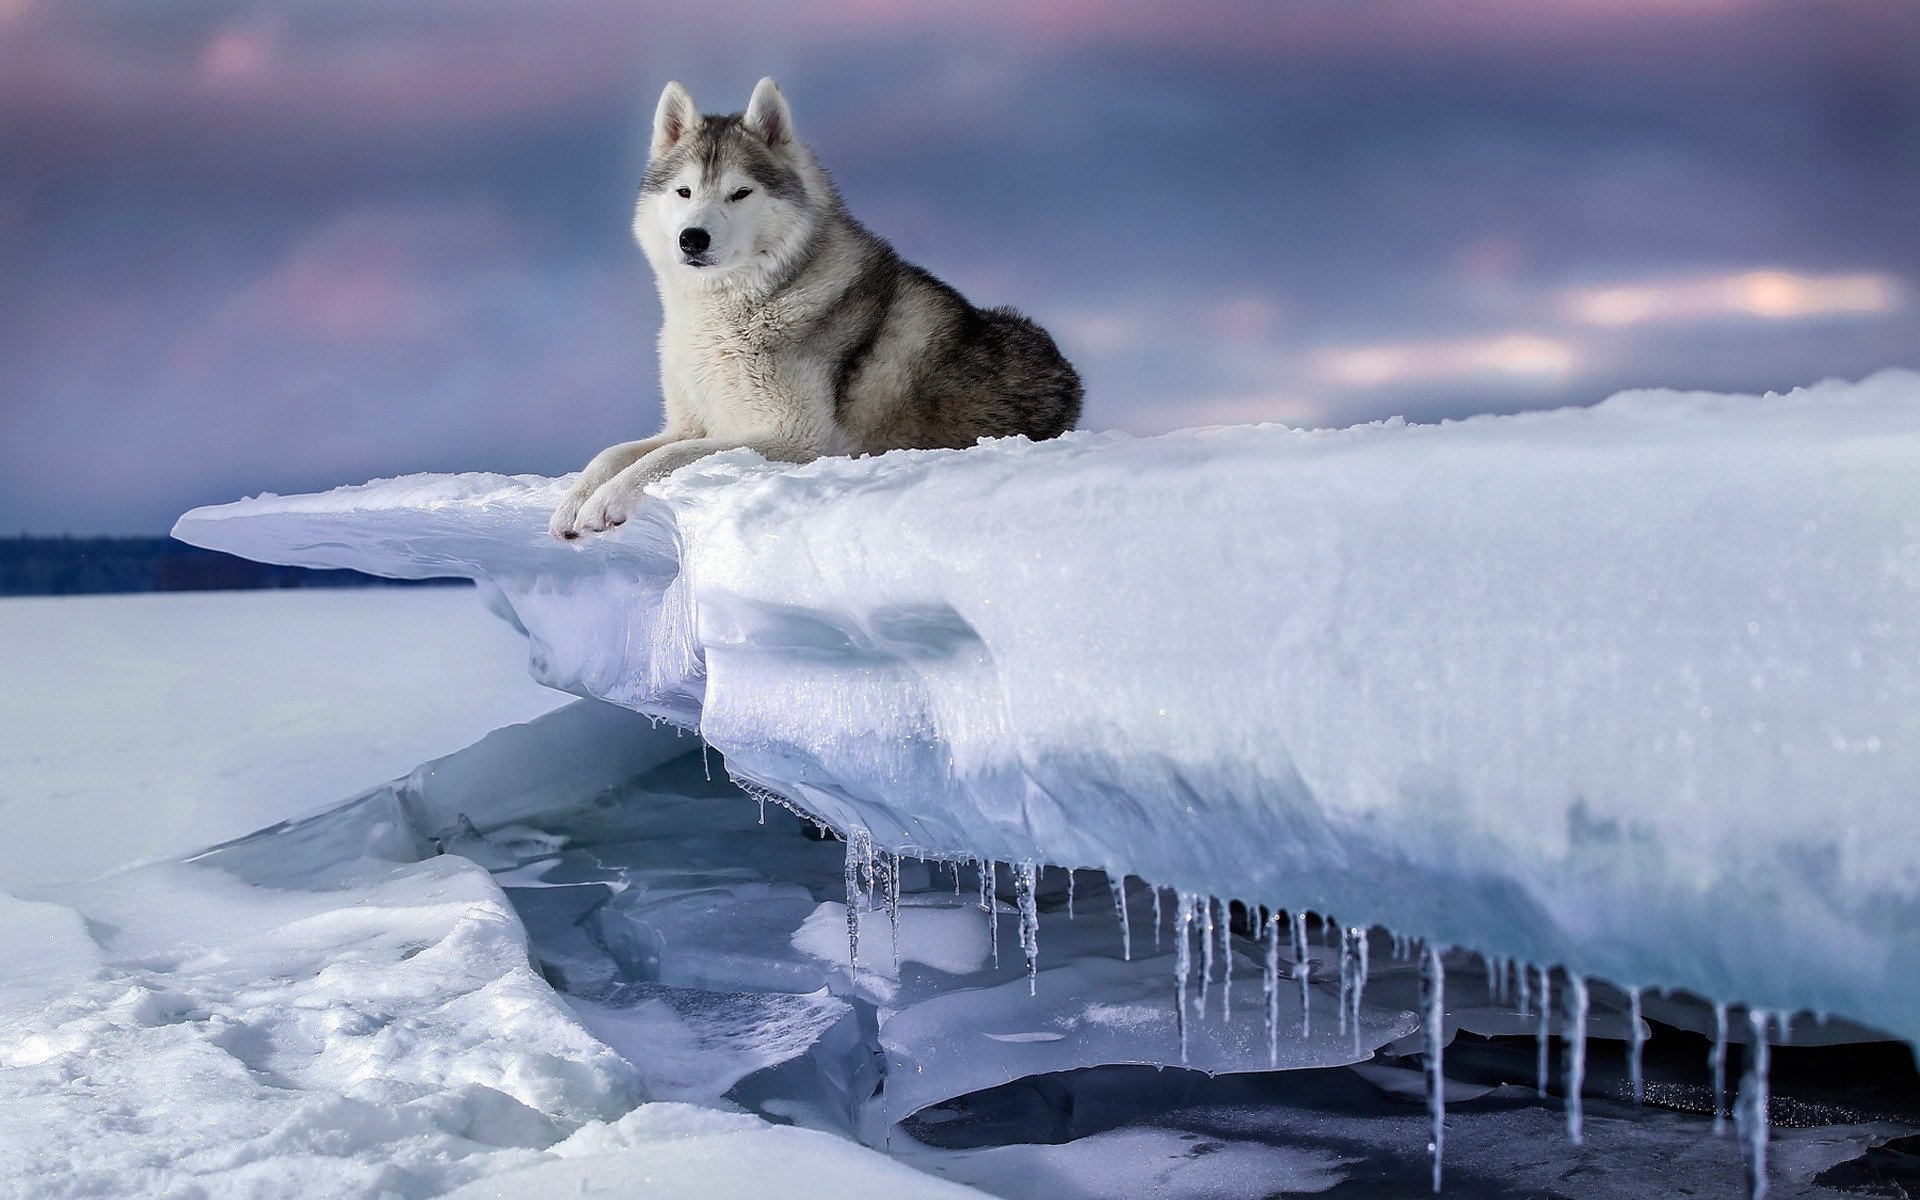 Descargar fondos de pantalla Alaska Malamute, Perros esquimales de Alaska,  el hielo, la nieve, el invierno, los perros, puesta de sol, noche, mascotas  monitor con una resolución 1920x1200. Imagenes de escritorio